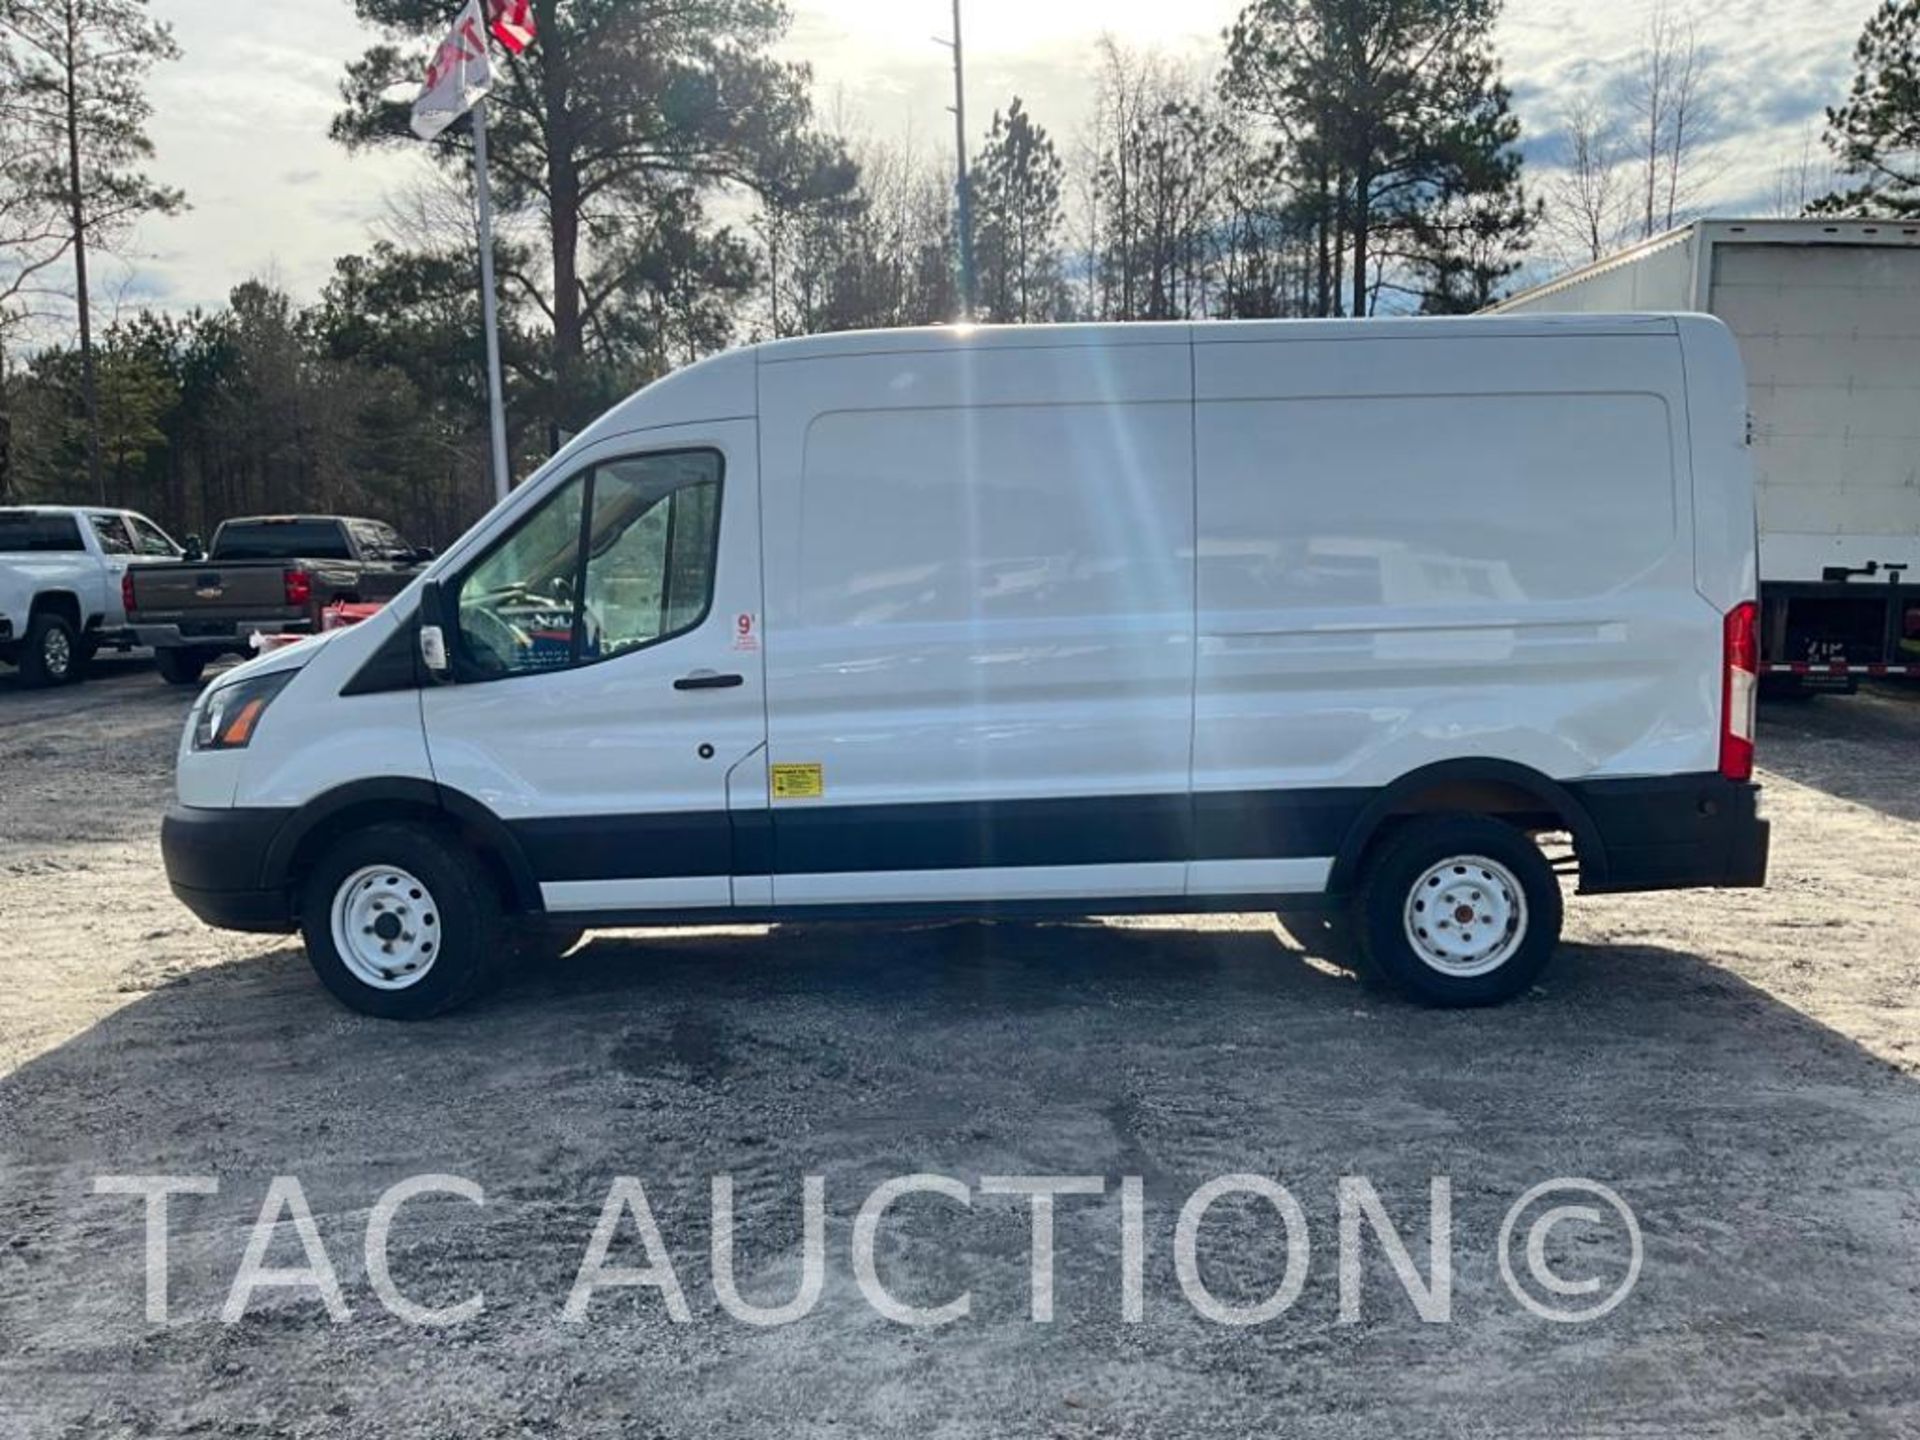 2019 Ford Transit 150 Cargo Van - Image 2 of 44